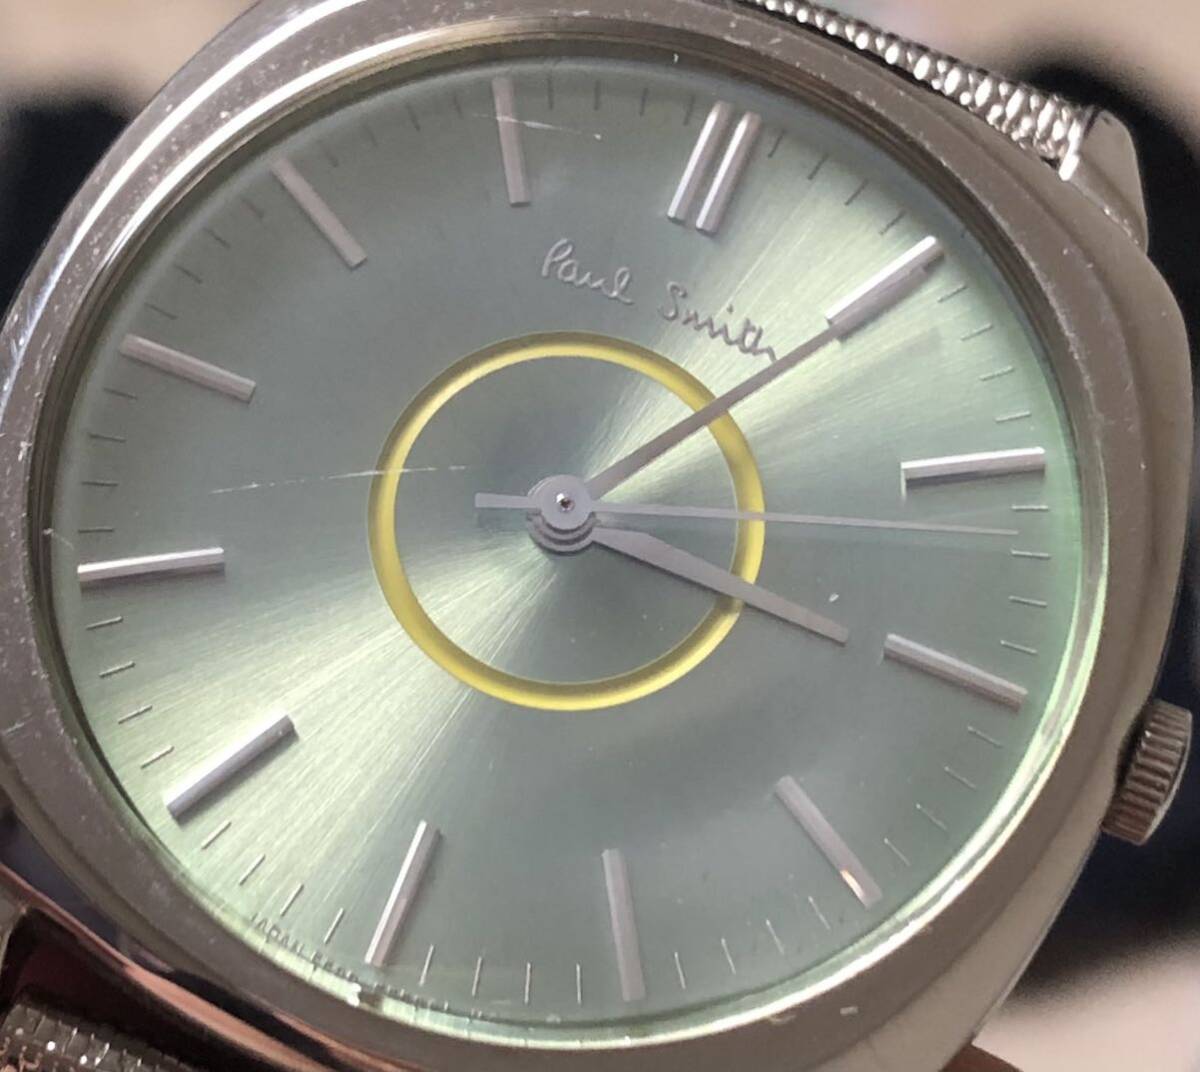 312-0393 Paul Smith Paul Smith мужской женские наручные часы металлический браслет кварц 5530-F52258 разряженная батарея работоспособность не проверялась 